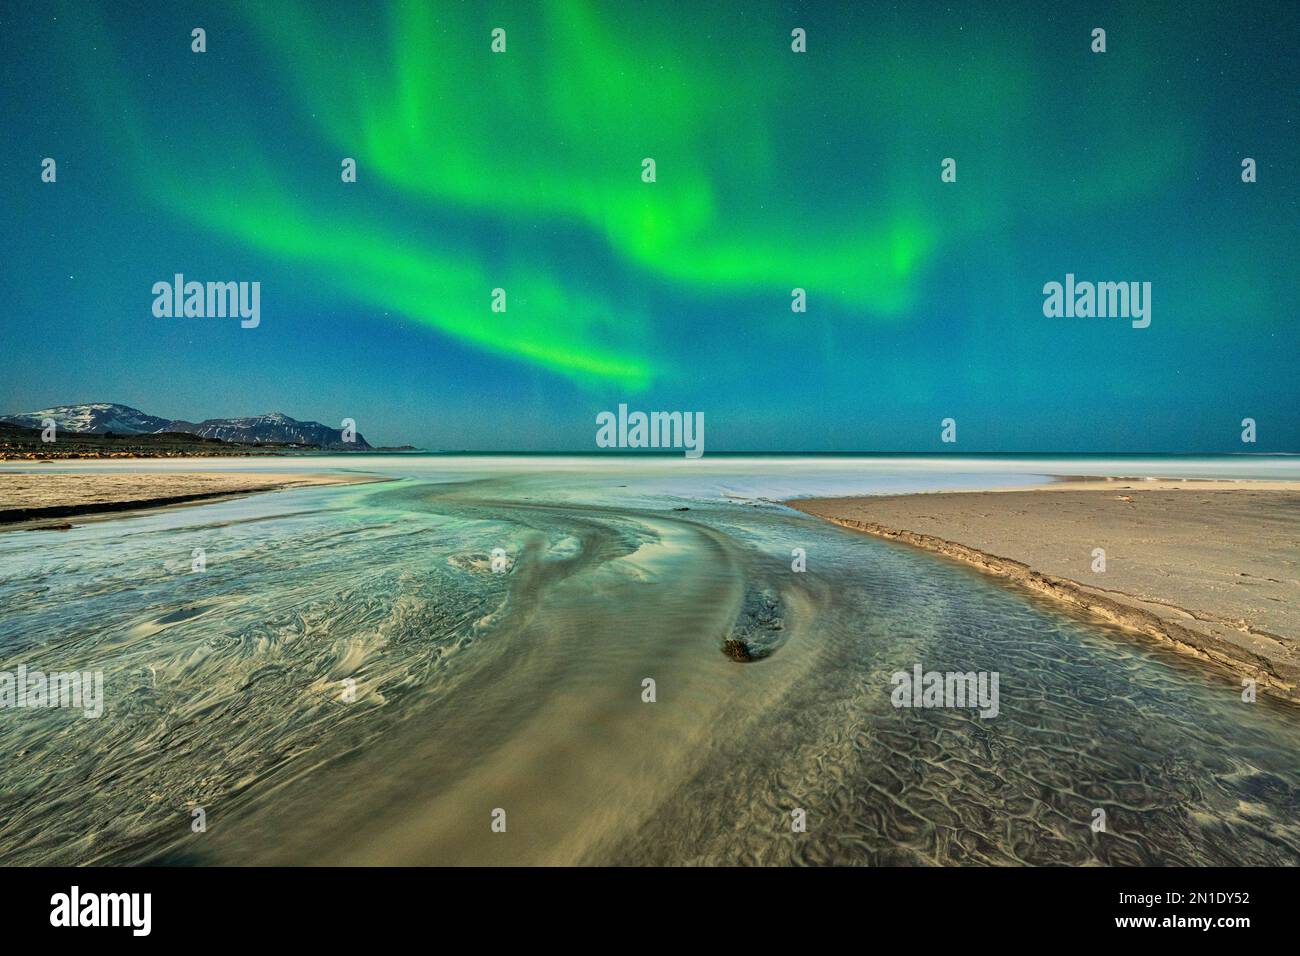 Sabbia increspata bagnata dalle onde durante l'aurora boreale, la spiaggia di Skagsanden, Ramberg, la contea di Nordland, le isole Lofoten, Norvegia Foto Stock